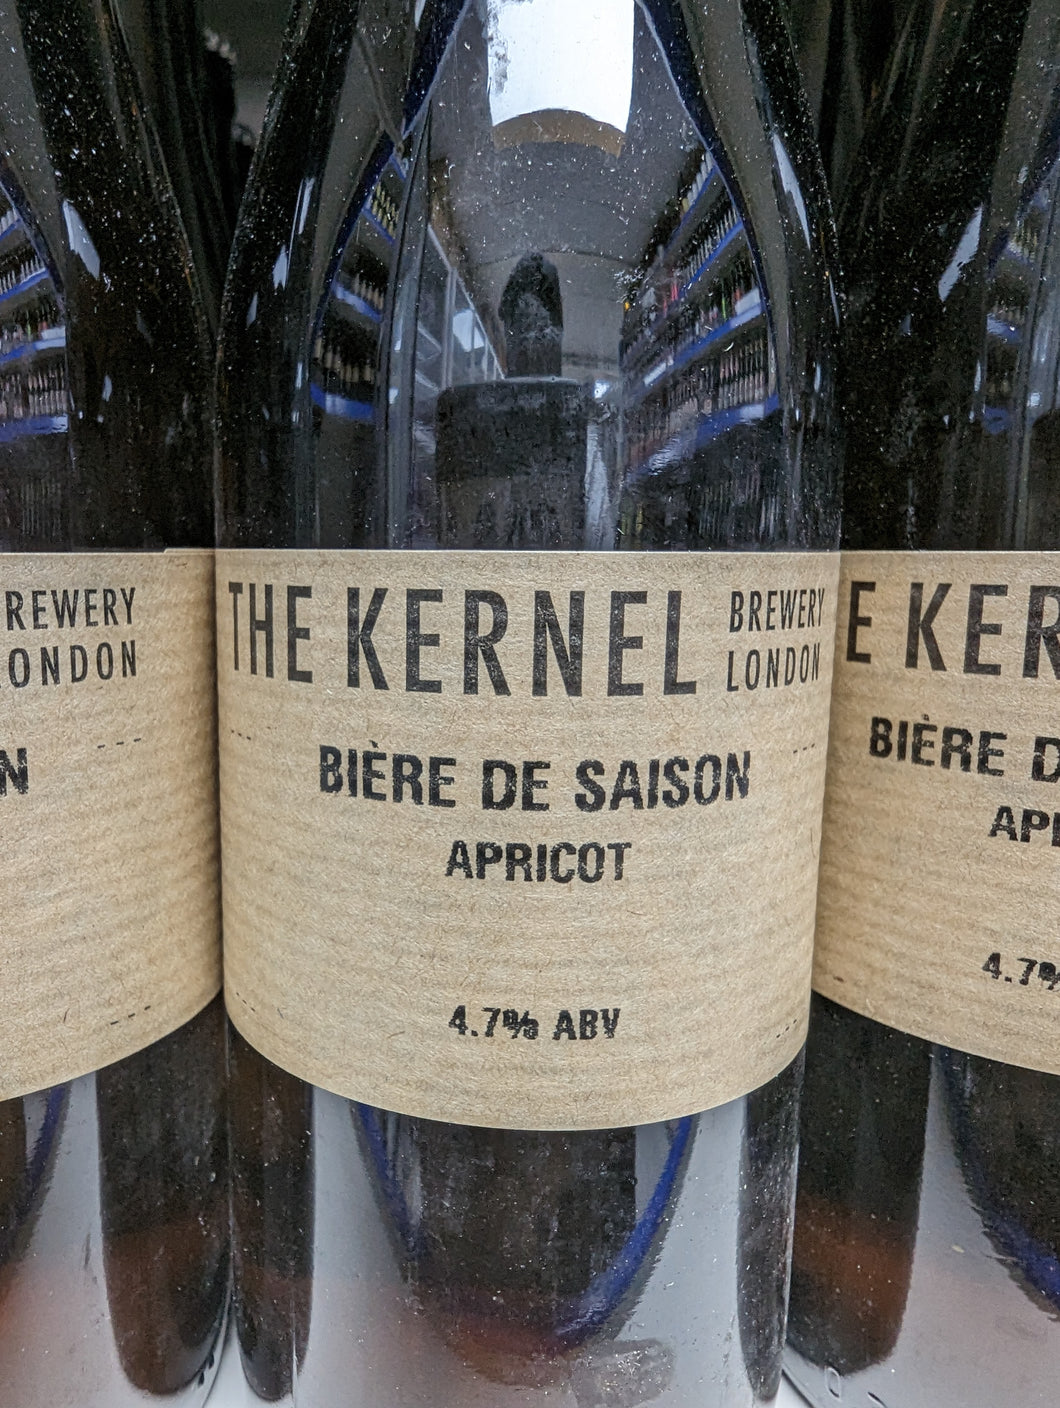 Bière De Saison Apricot - The Kernel Brewery - Bière De Saison Apricot, 4.7%, 330ml Bottle